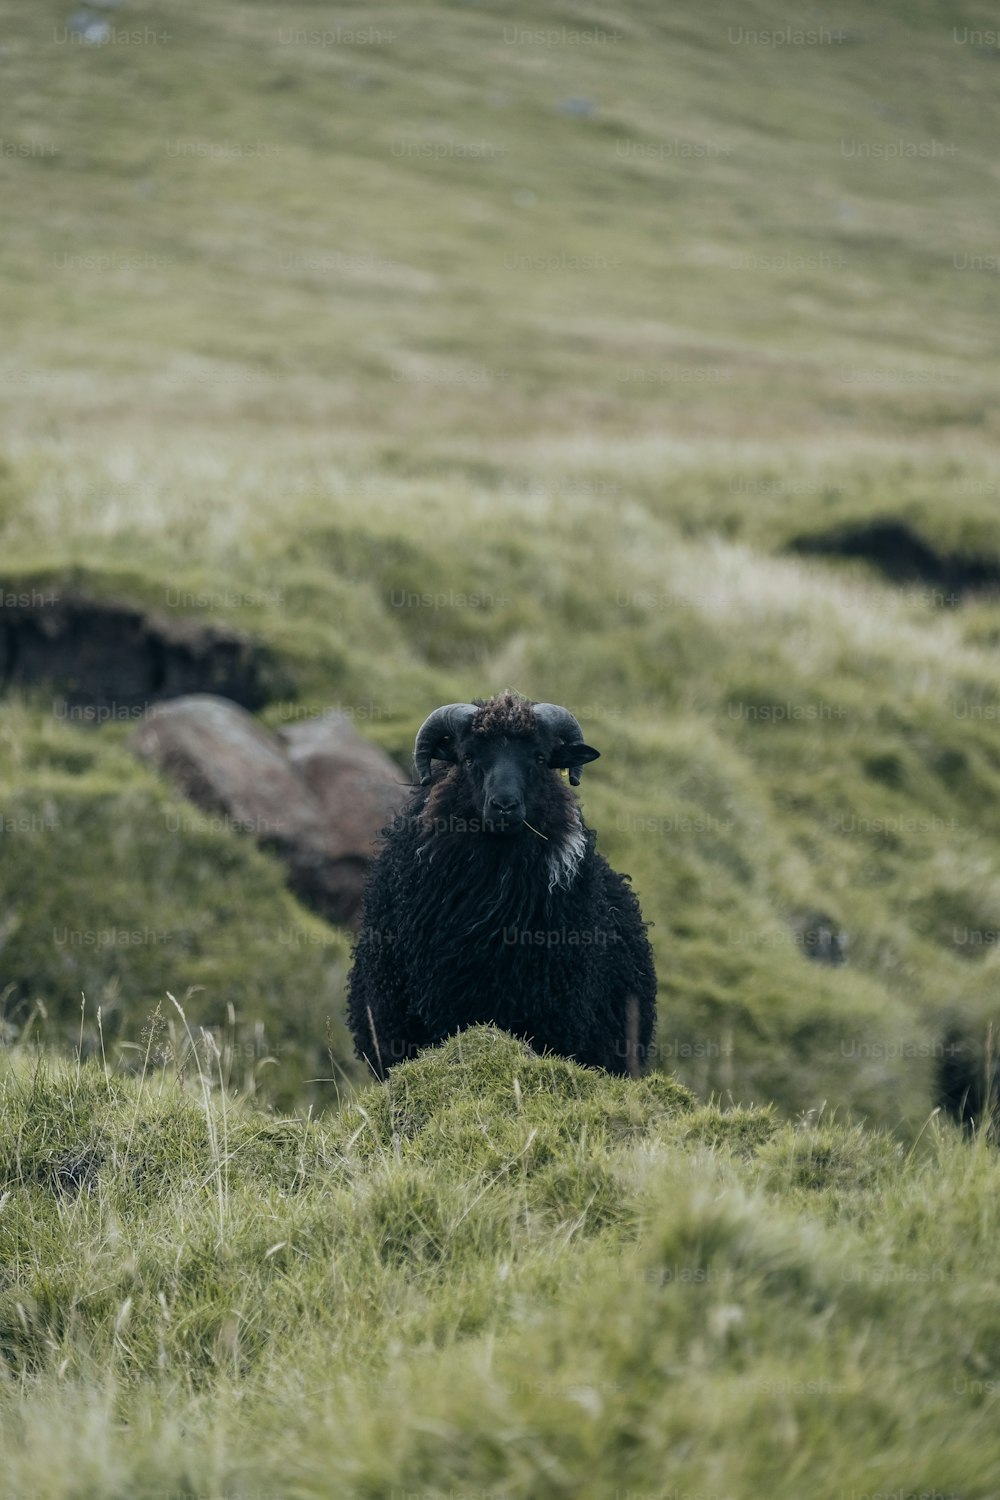 Una oveja negra de pie en la cima de una exuberante ladera verde